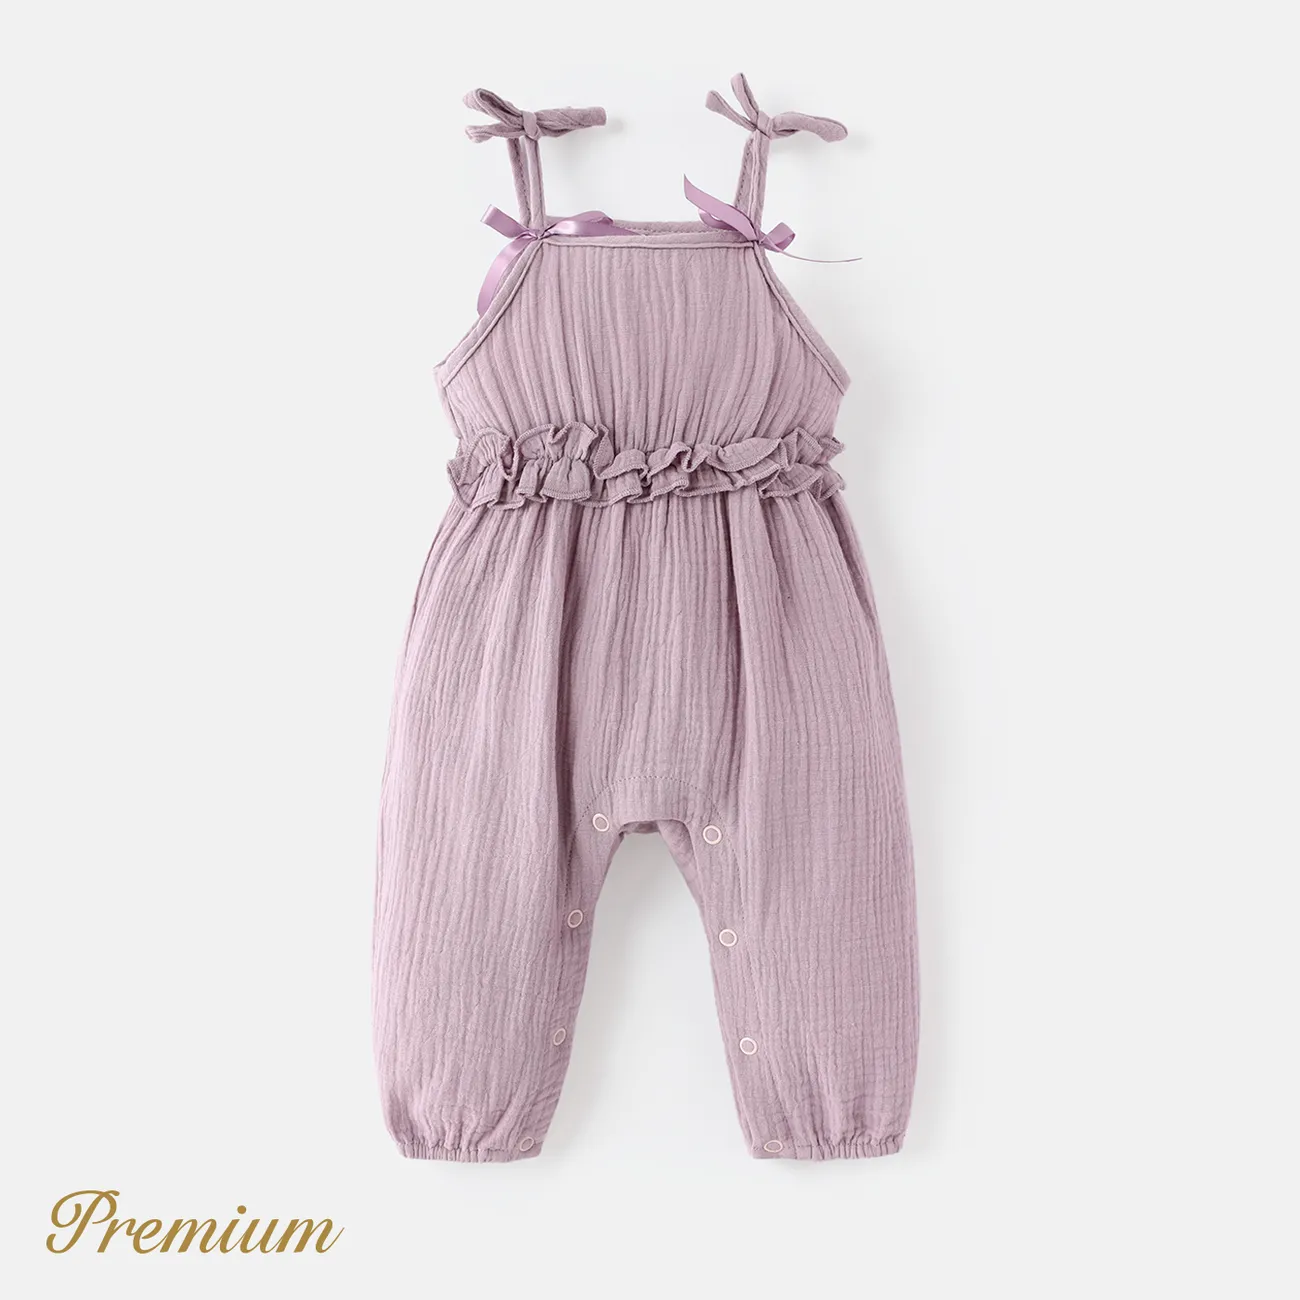 嬰兒 女 背心 優雅 無袖 長腿連身衣 紫羅蘭 big image 1